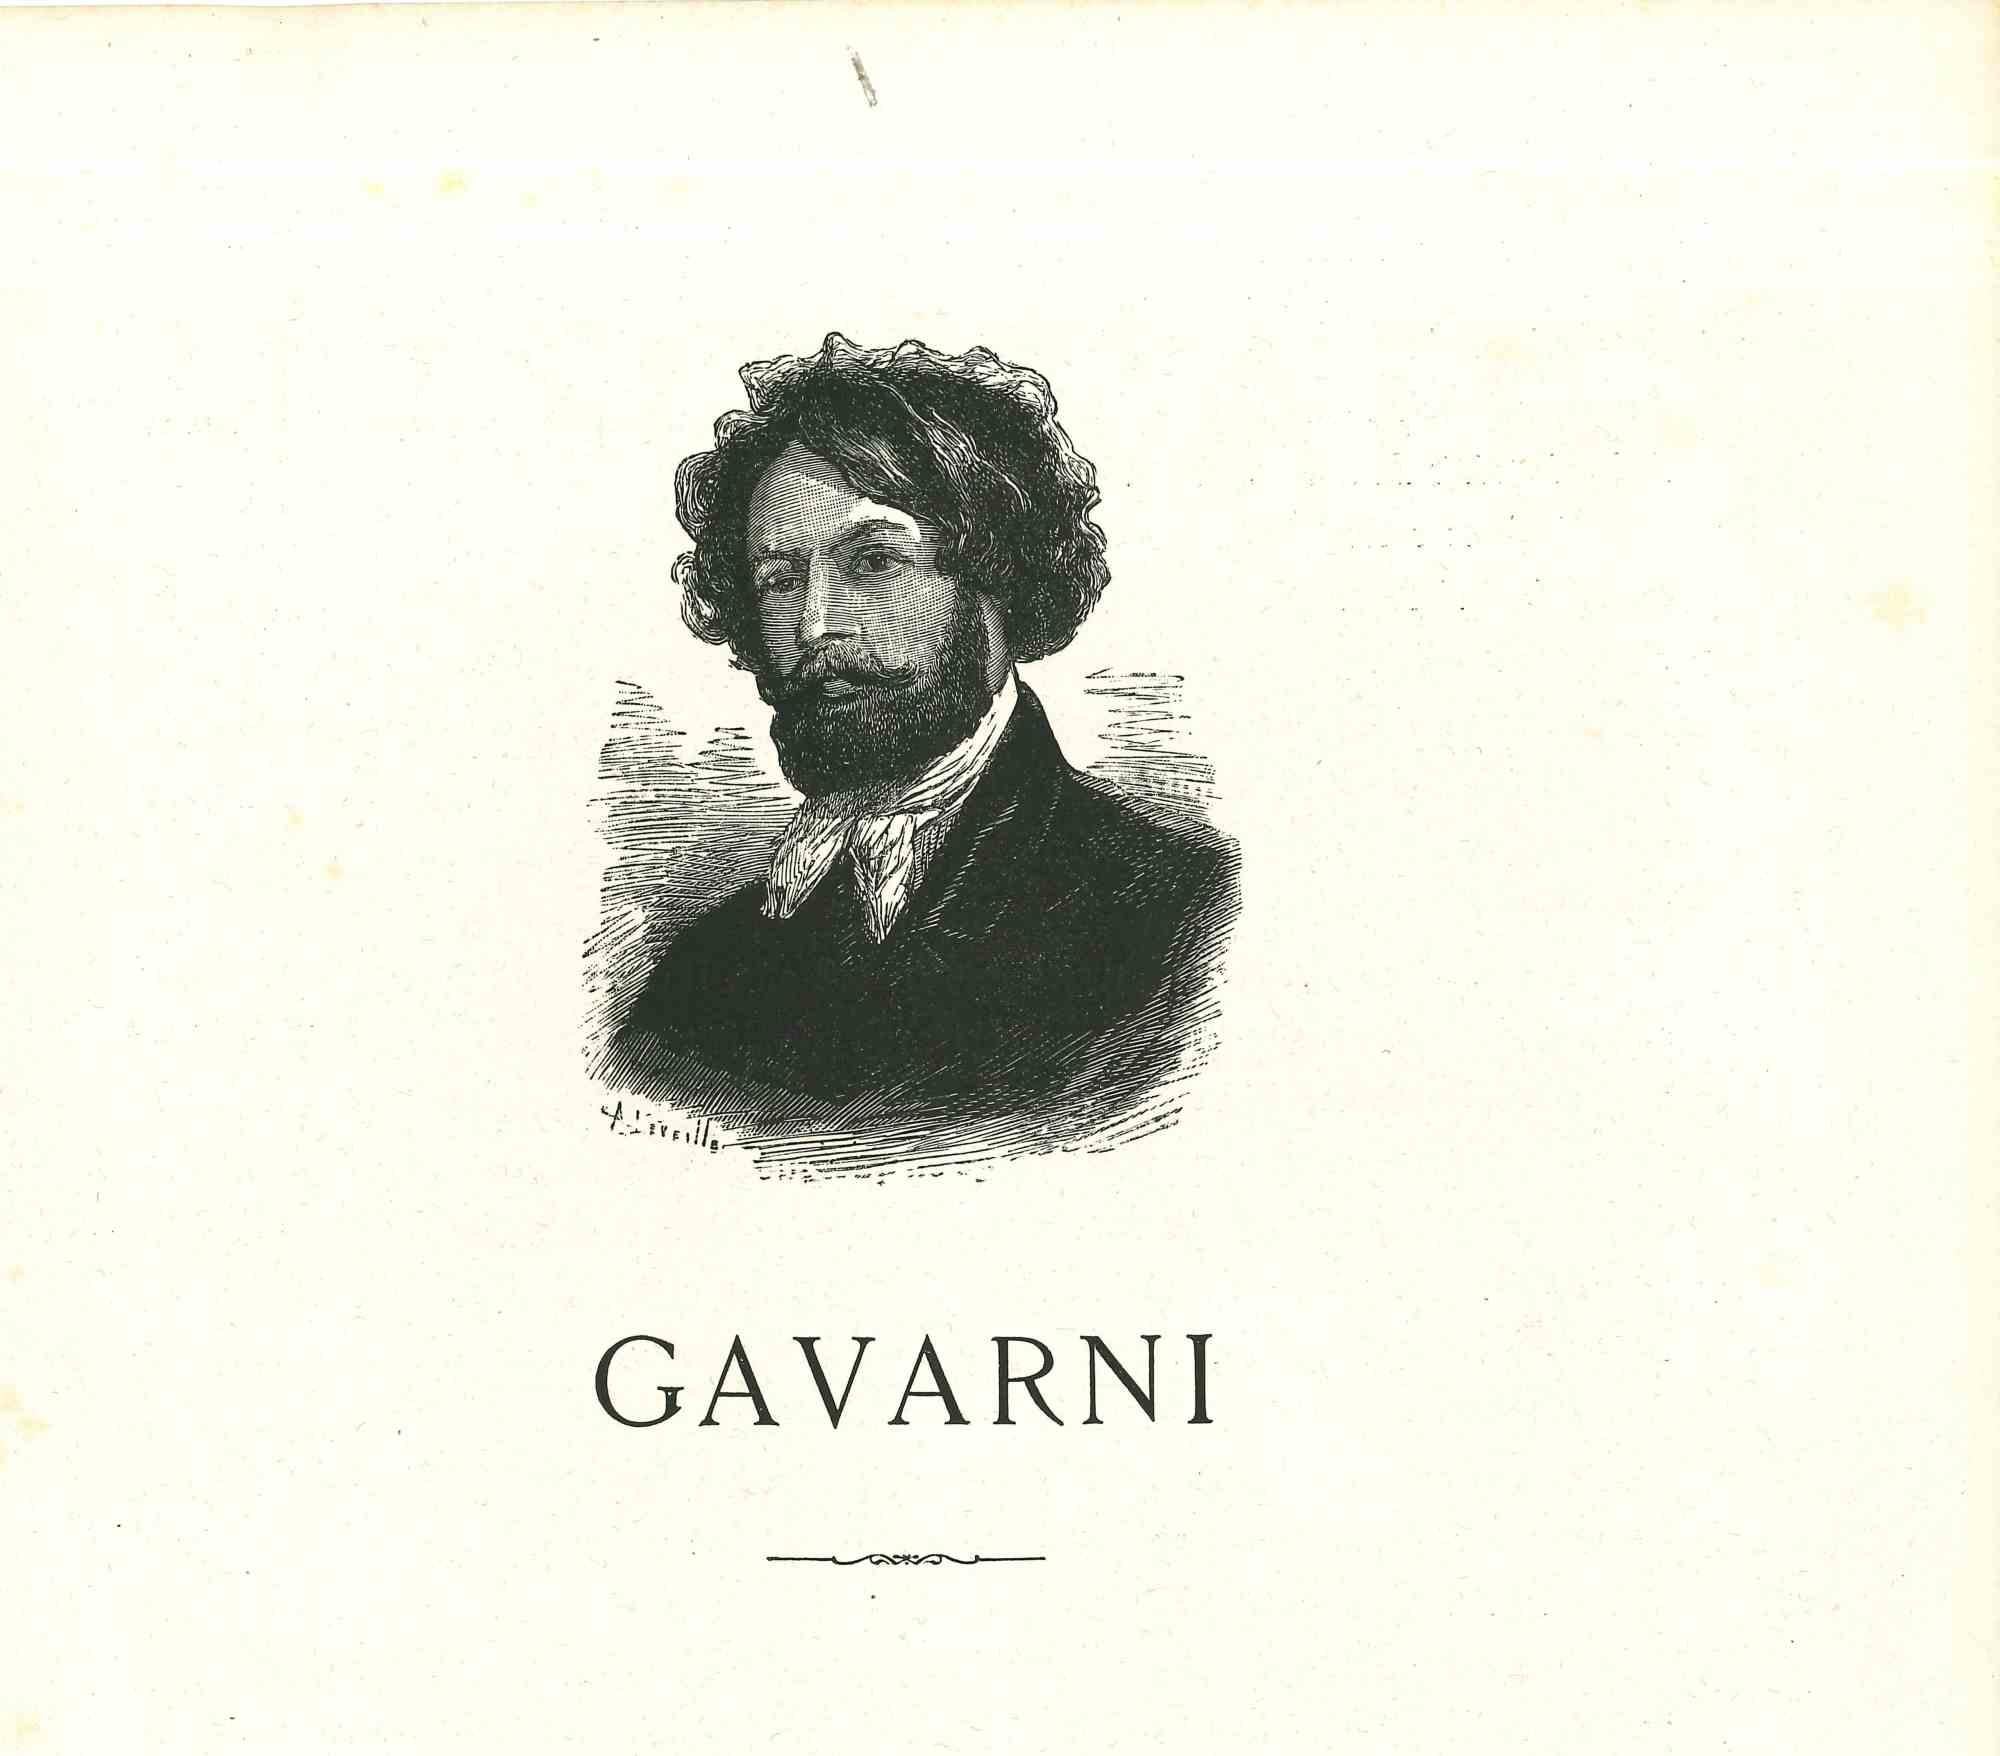 Self-portrait de Gavarni - Lithographie originale d'après Paul Gavarni - 1881